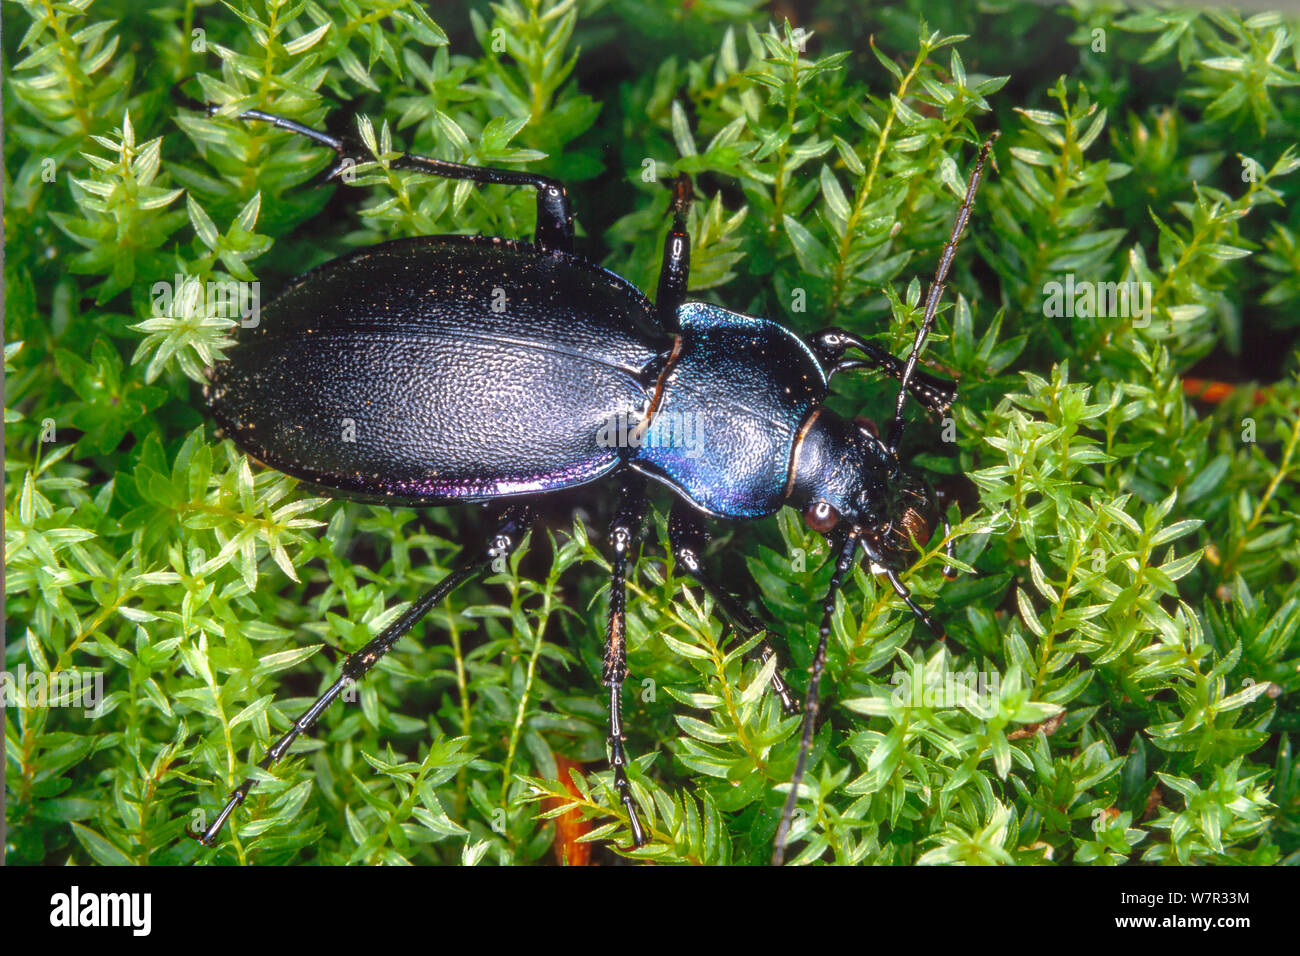 Carabus tendente al violaceo, talvolta chiamato massa viola beetle, o la pioggia Beetle è una specie notturne. Foto Stock